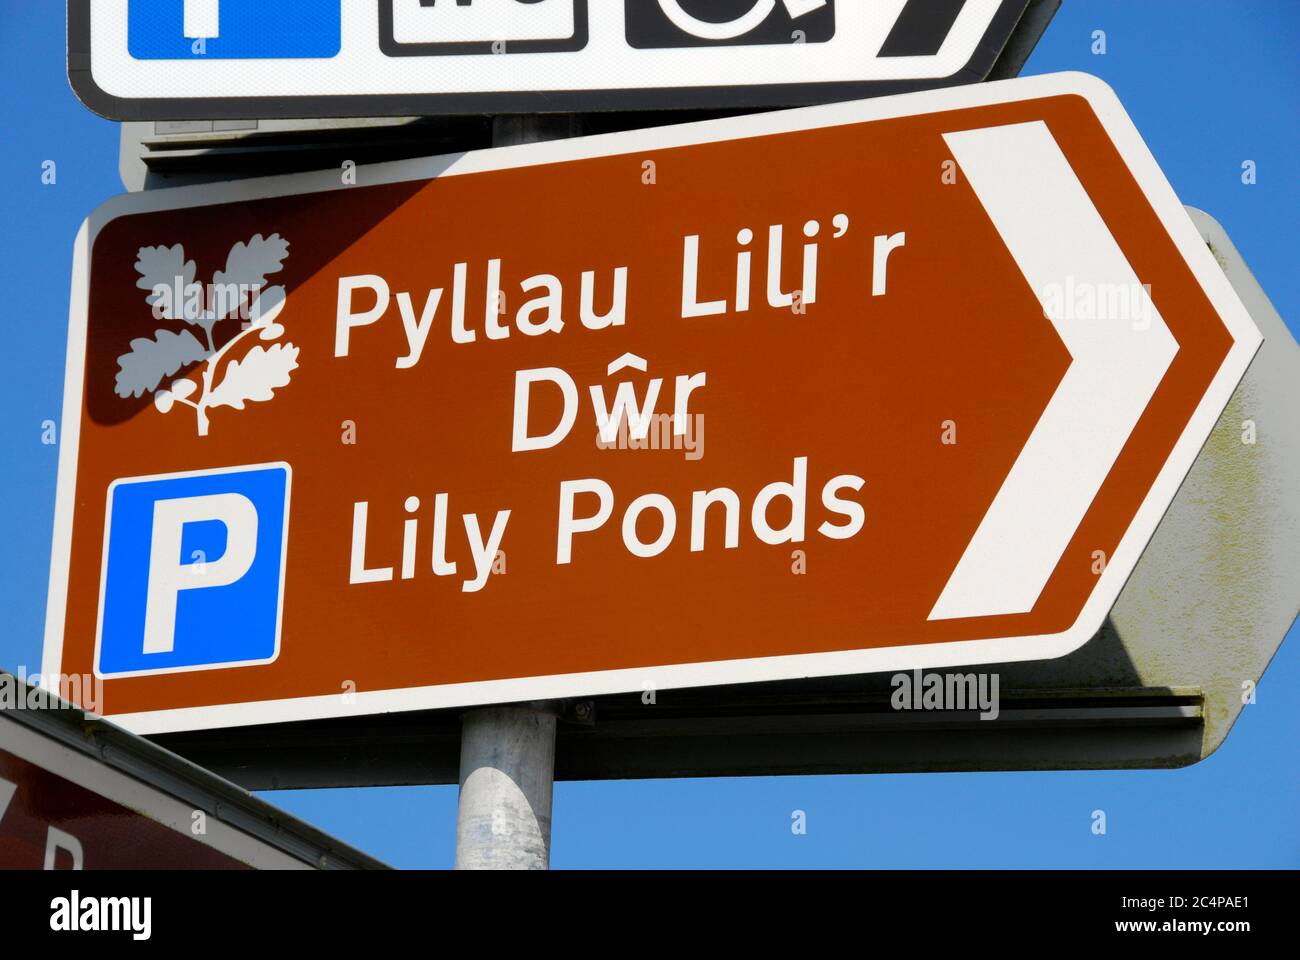 National Trust Zeichen, die Lily Ponds in zwei Sprachen, Englisch und Walisisch, Bosherston, Pembrokeshire, Wales Stockfoto